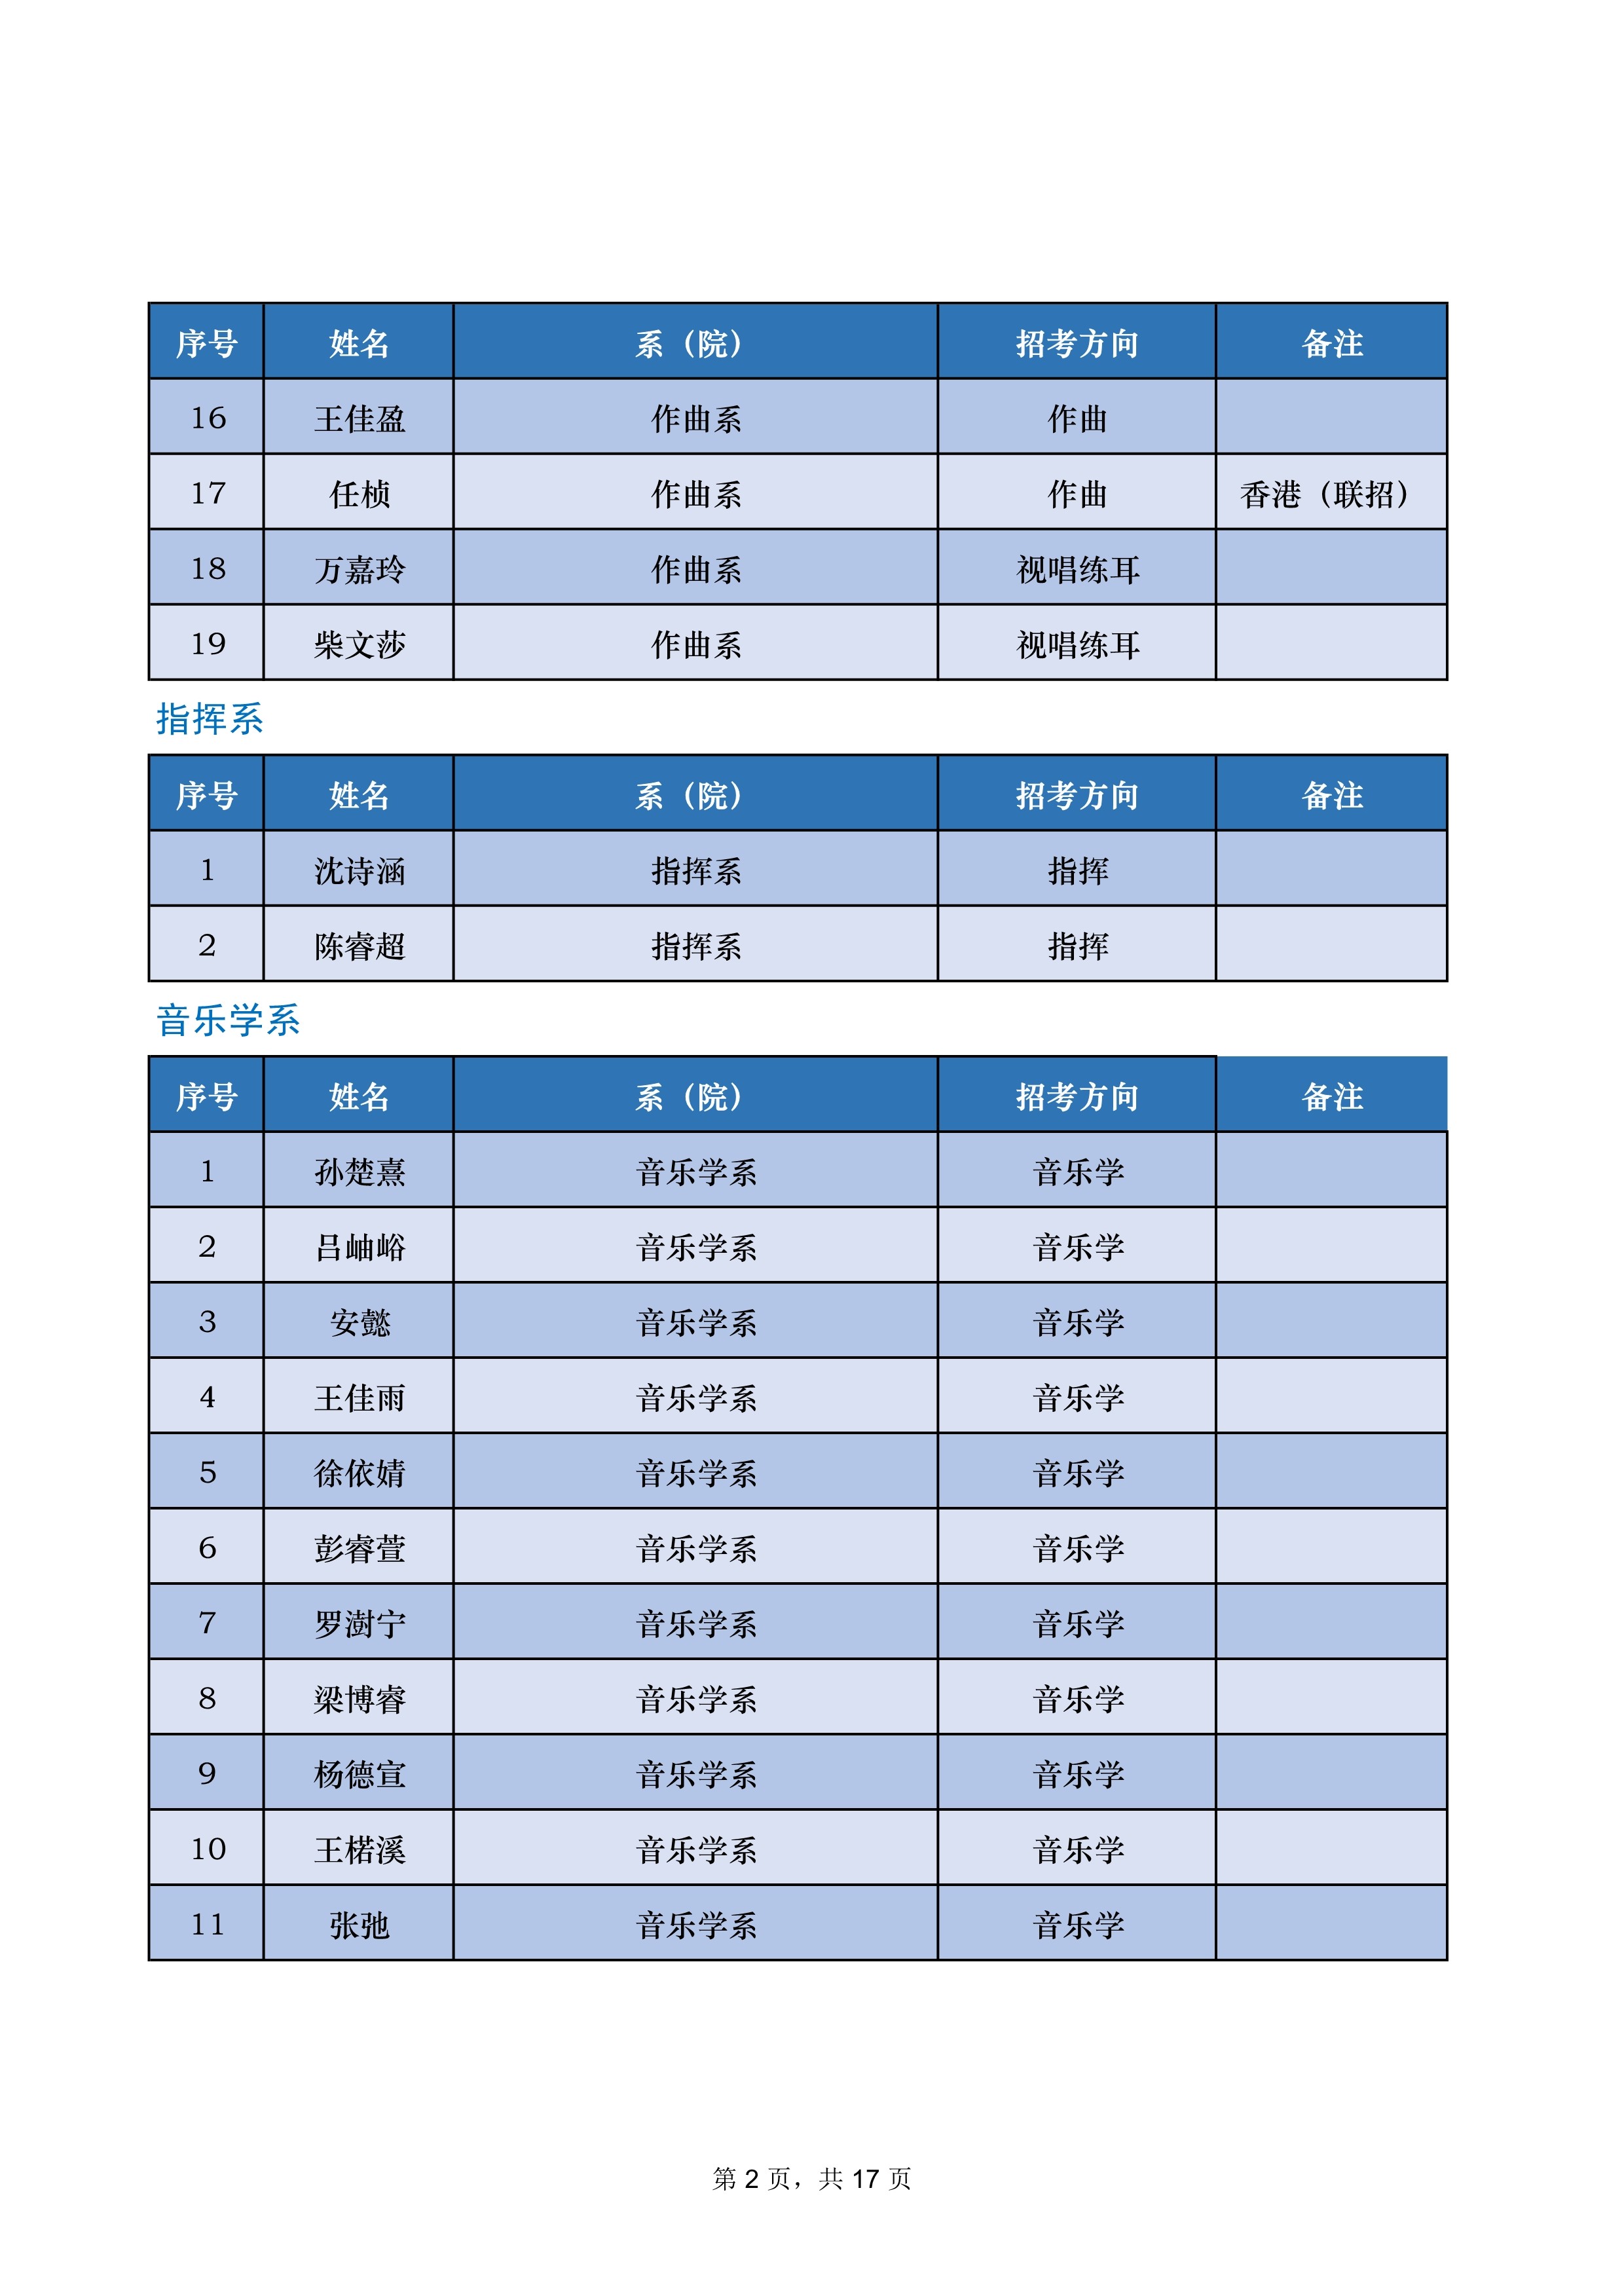 中央音乐学院2022年本科招生录取名单【不含上海考生和香港中学文凭考生】_2.jpg